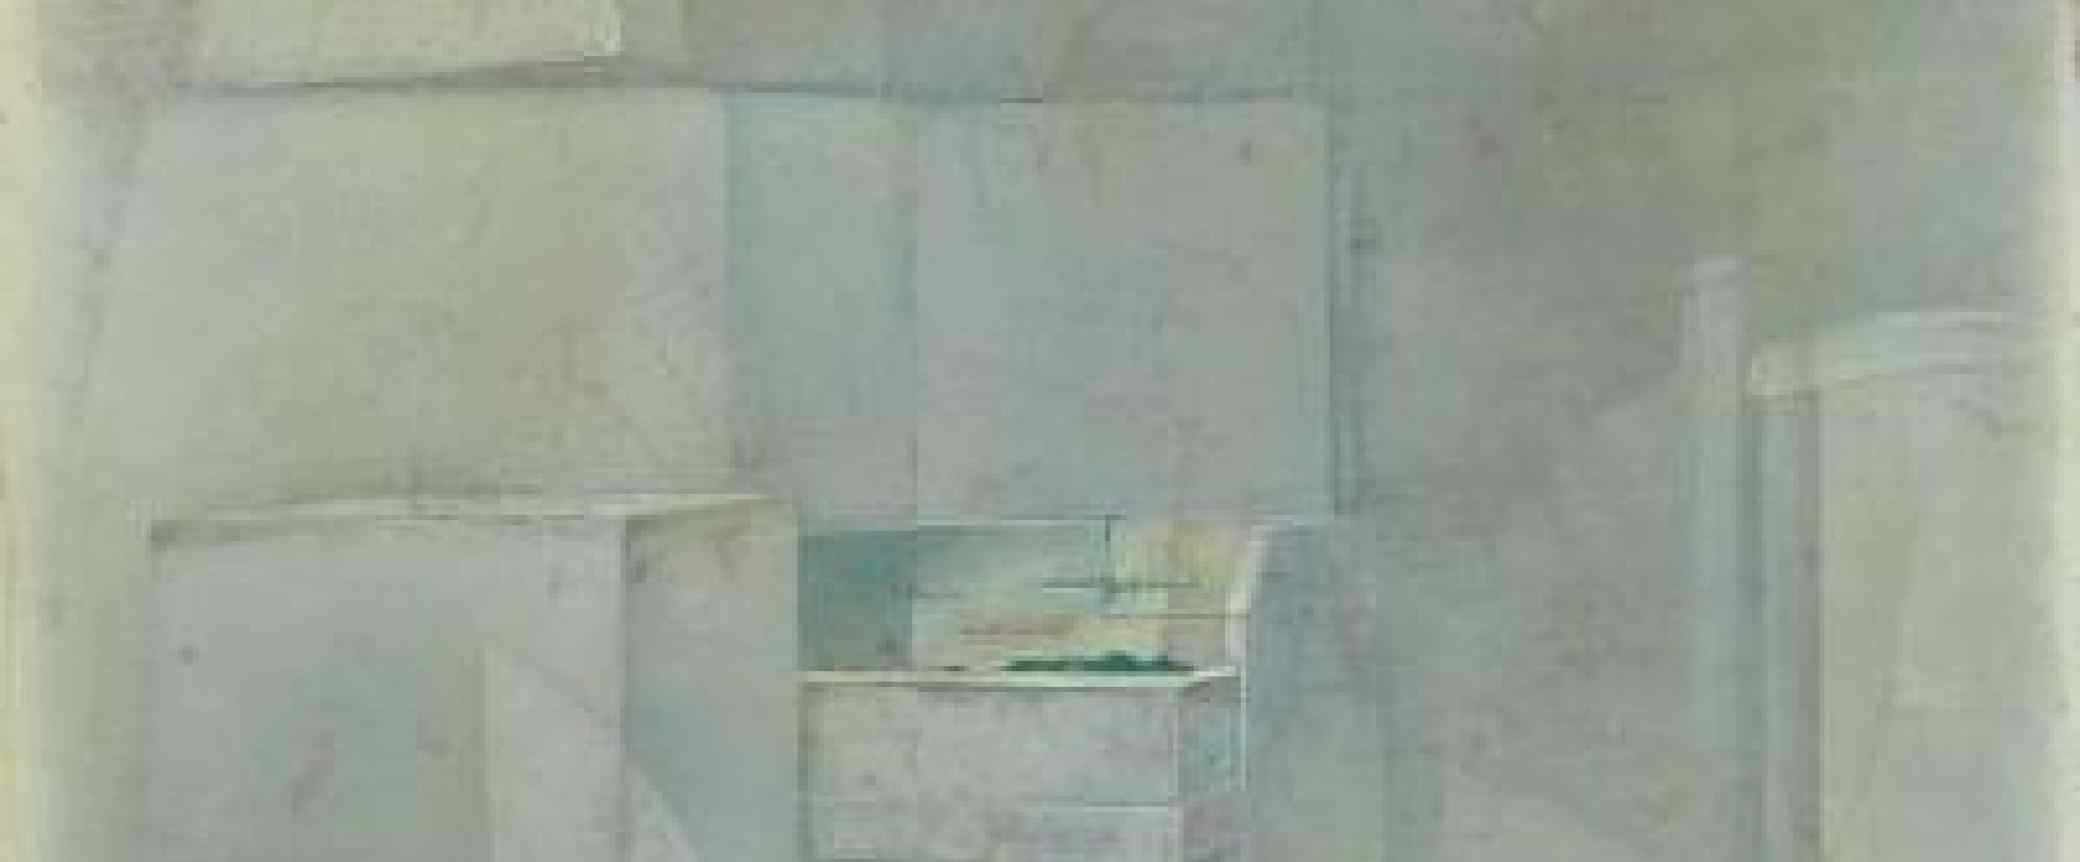 Sense Títol c. 1985. Pintura al tremp sobre fusta, 60 x 72,8 cm.